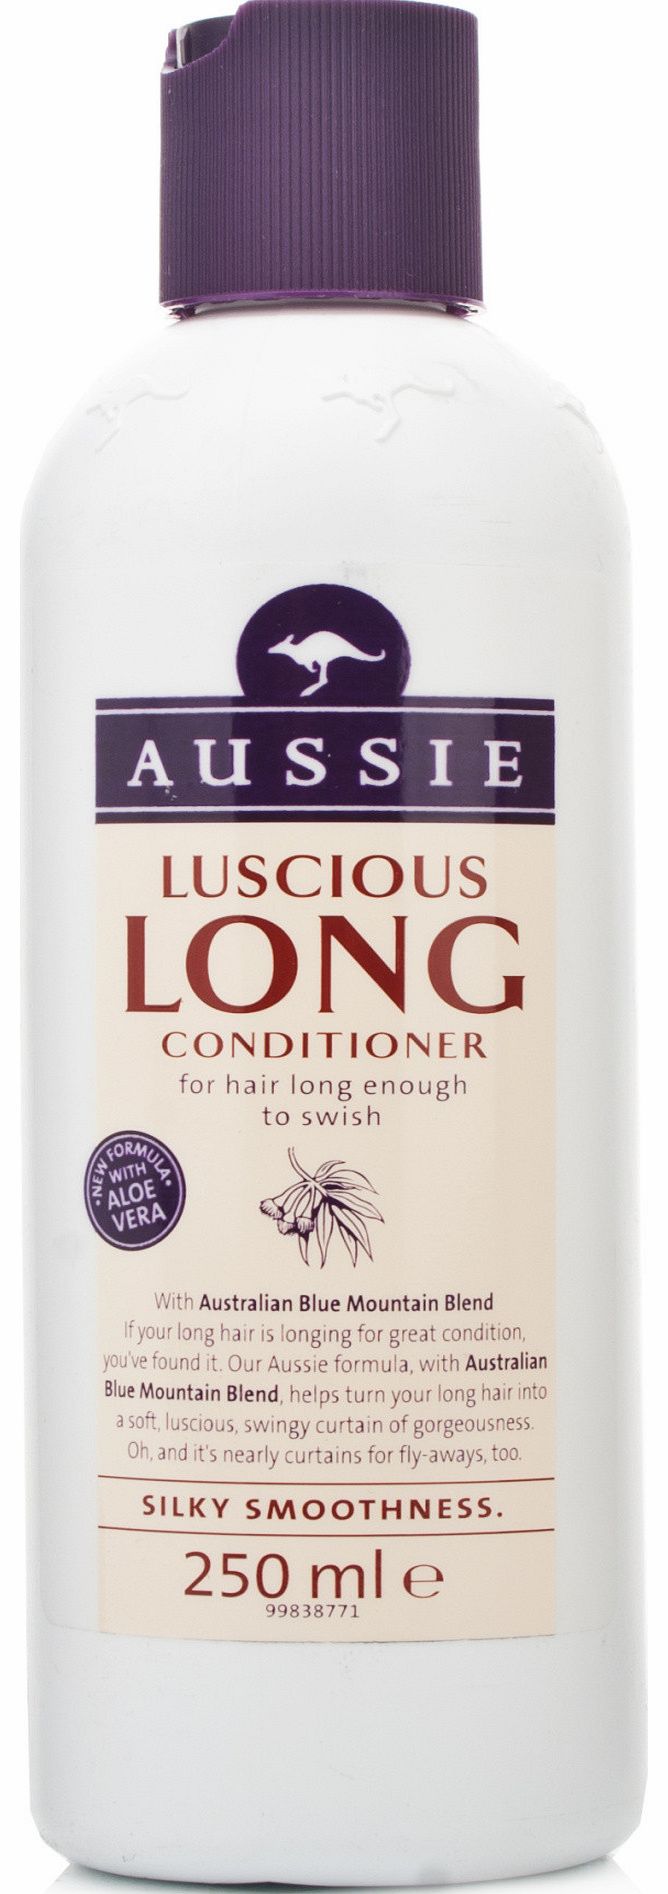 Aussie Luscious Long Conditioner